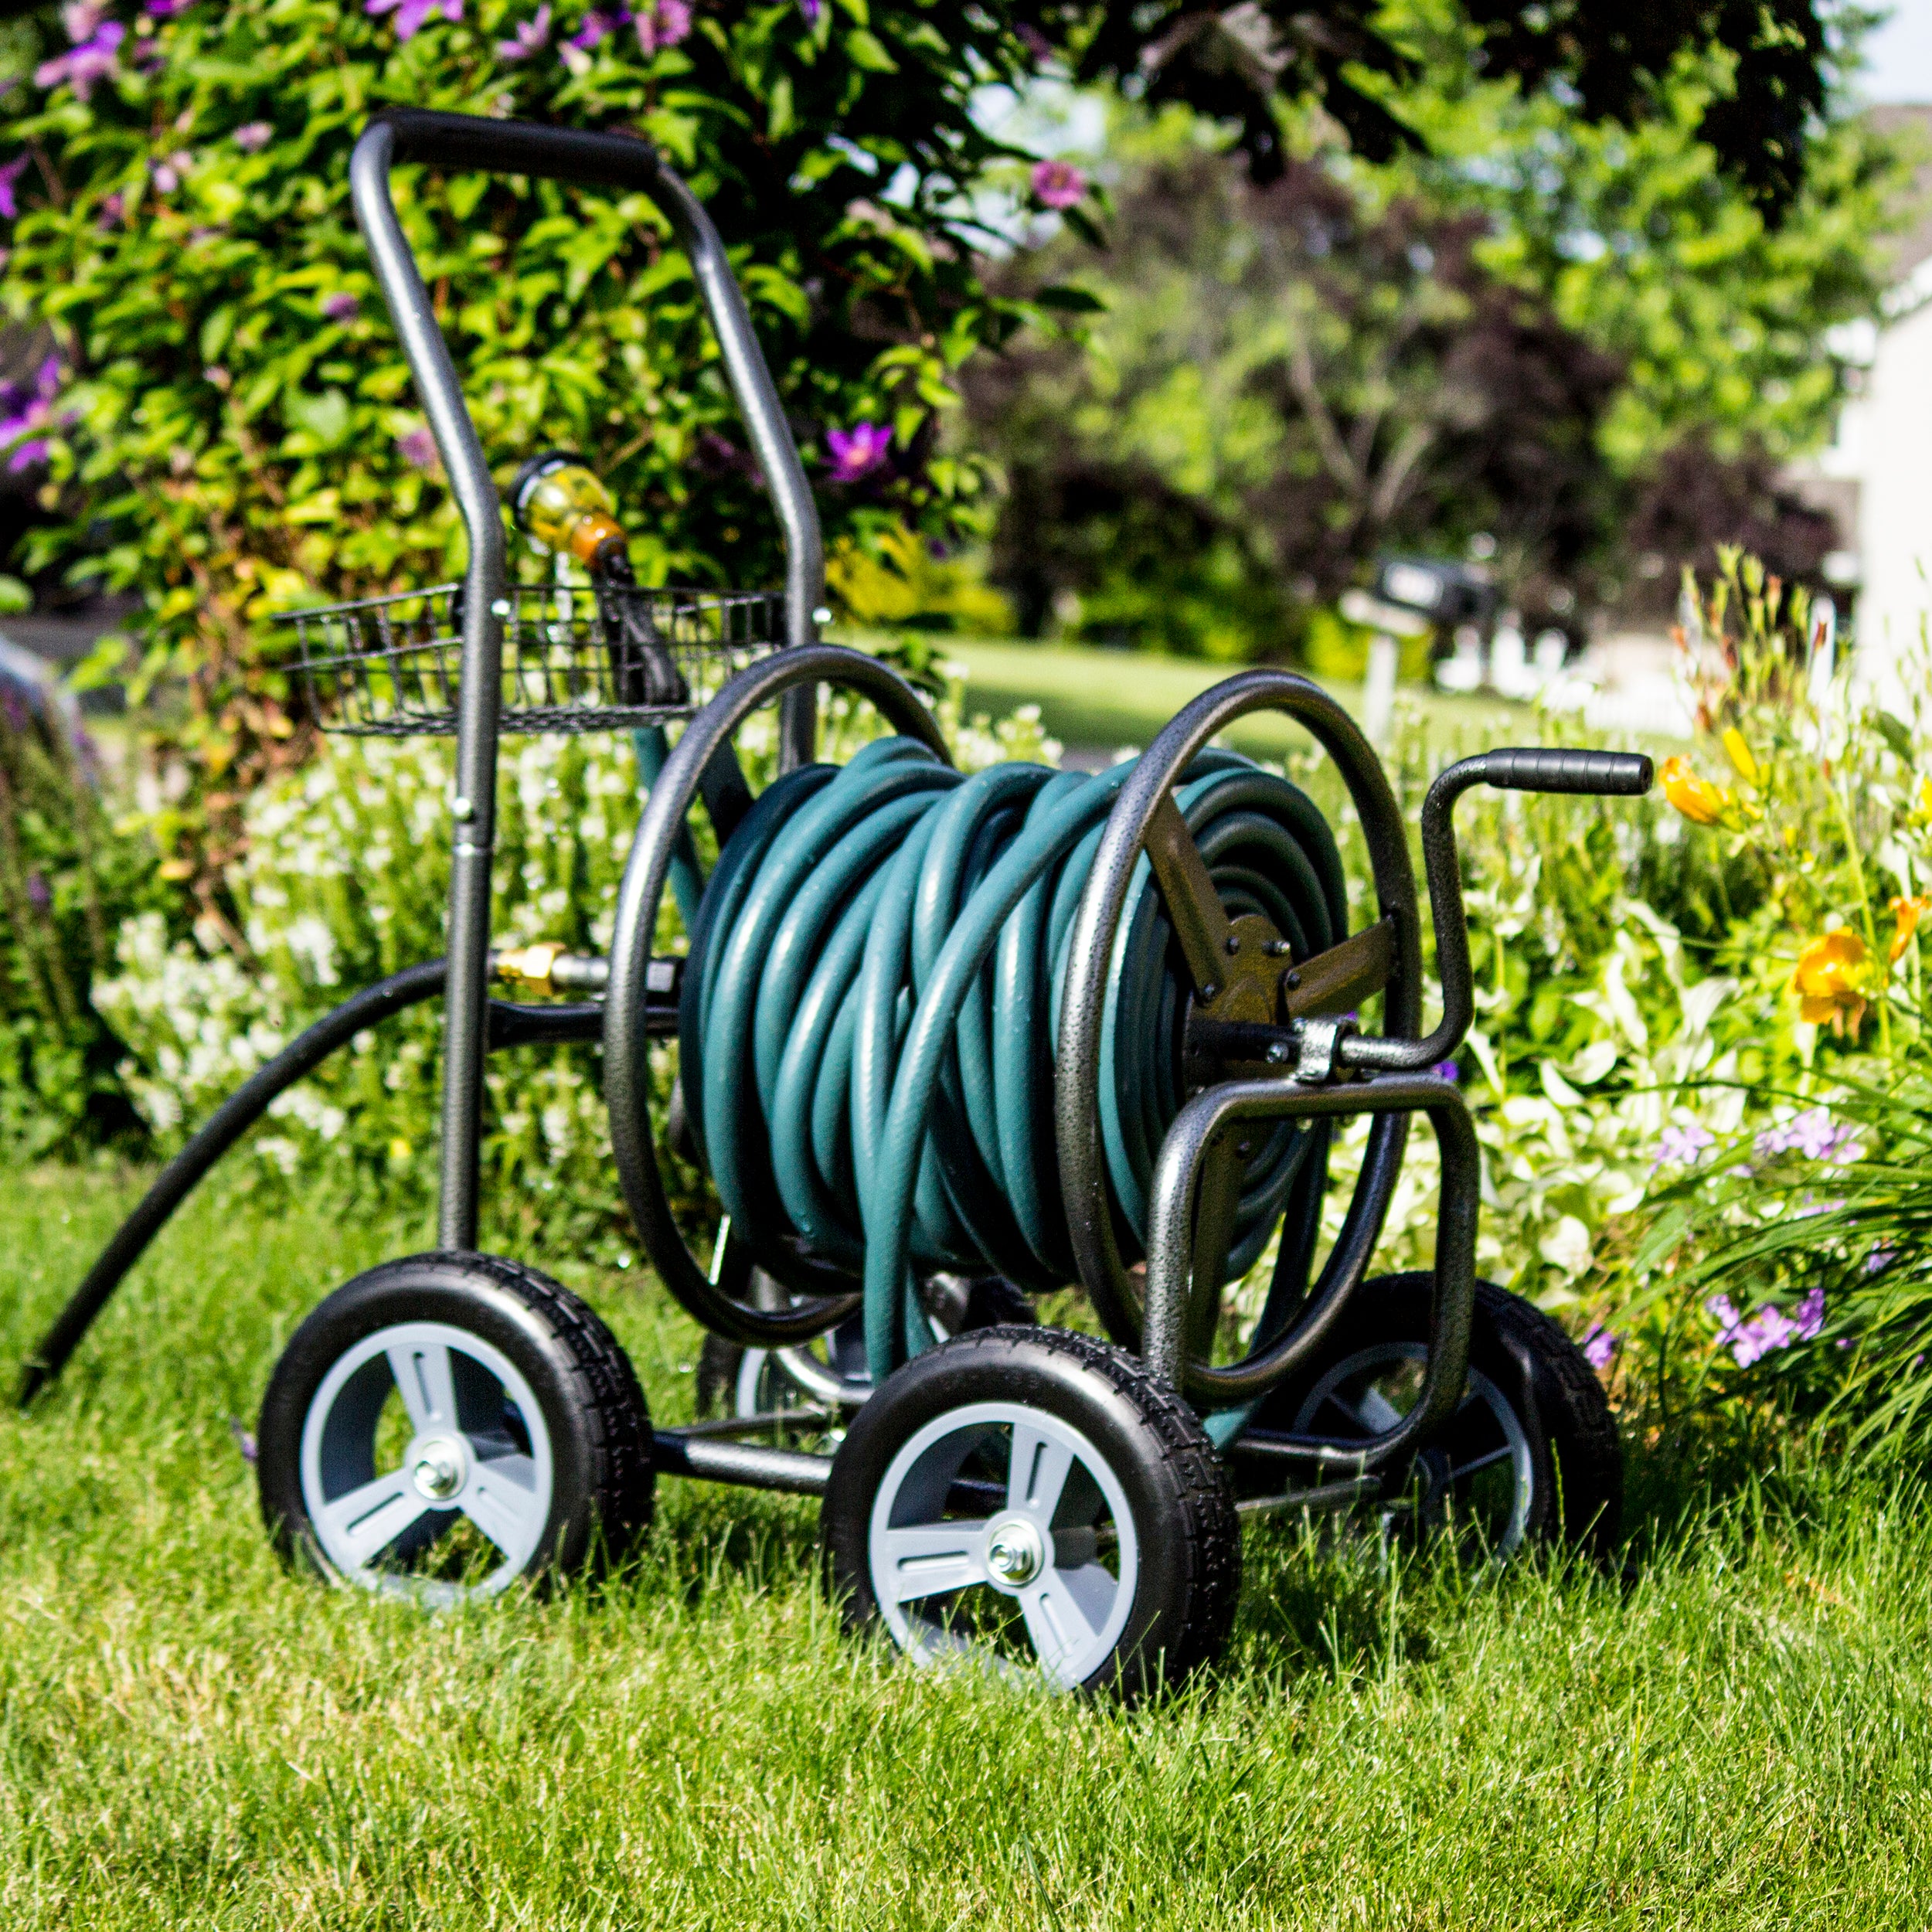 Glitzhome 36 4-Wheel Steel Garden Hose Reel Cart w/ Basket 